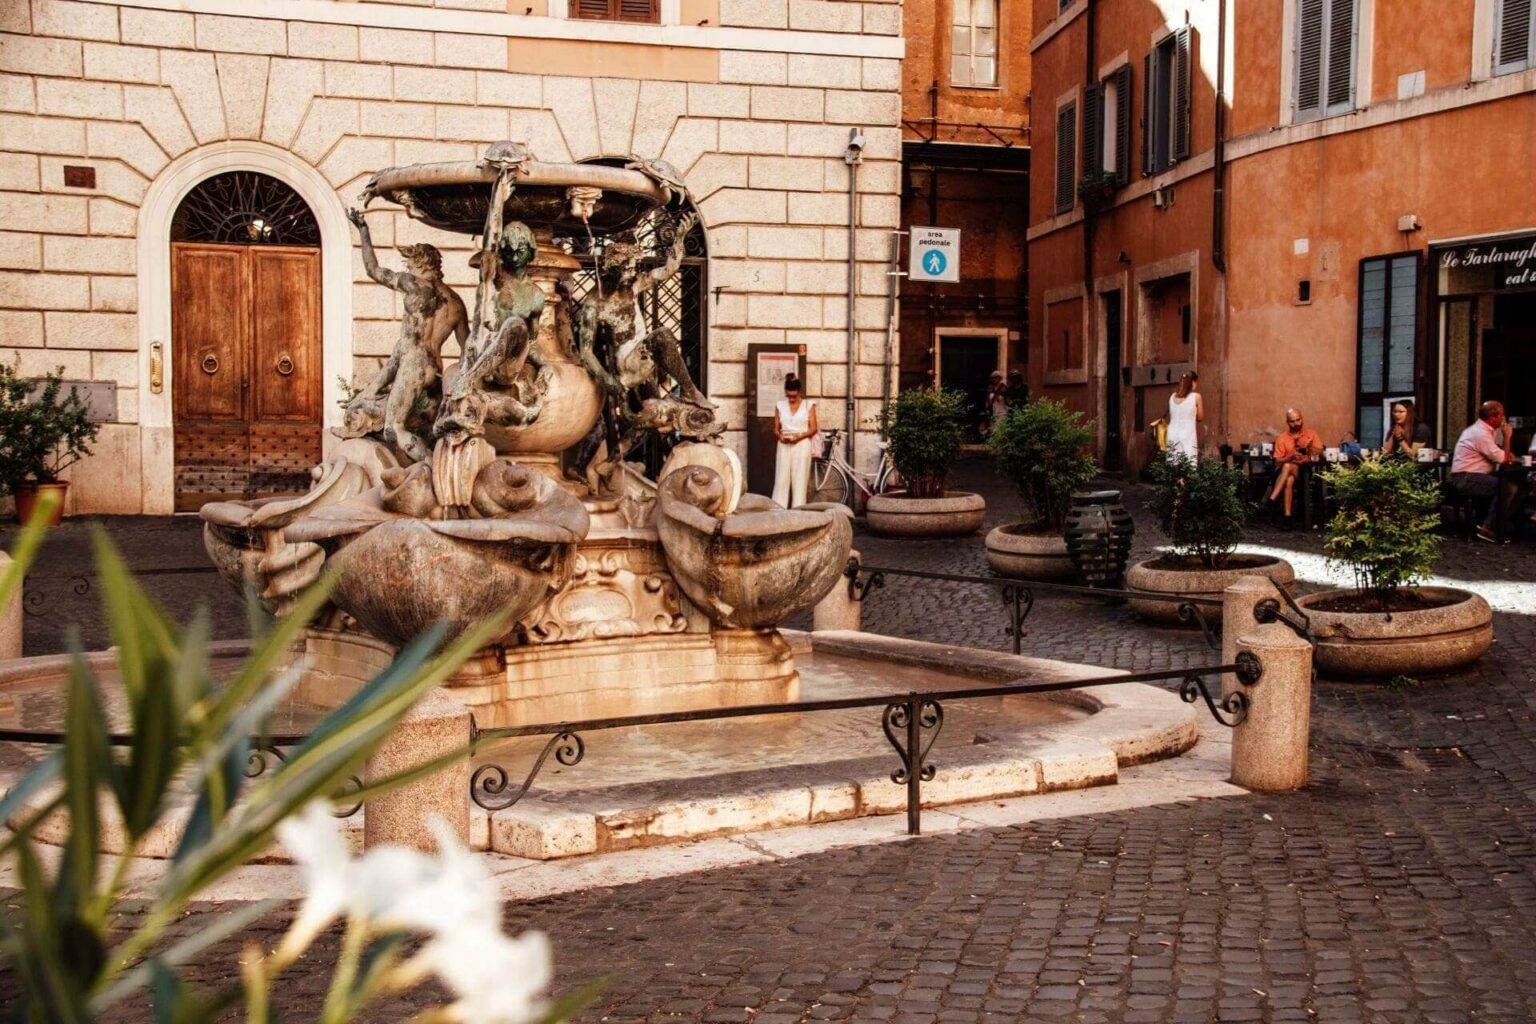 Einfach wunderschön - der Schildkrötenbrunnen auf der Piazza Mattei.